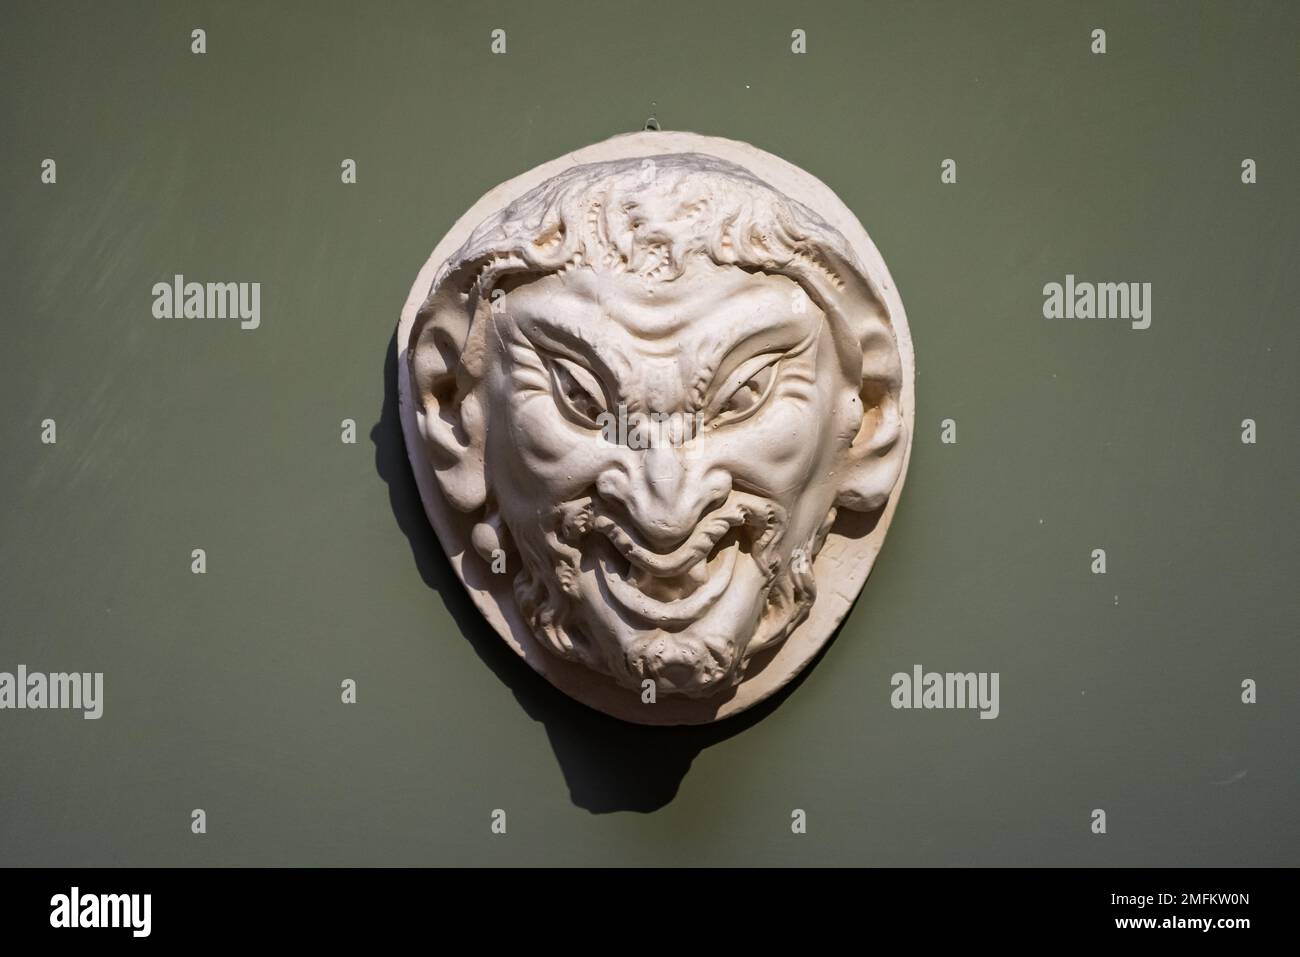 Cara fea del hombre malvado tallado en un amuleto de piedra Foto de stock